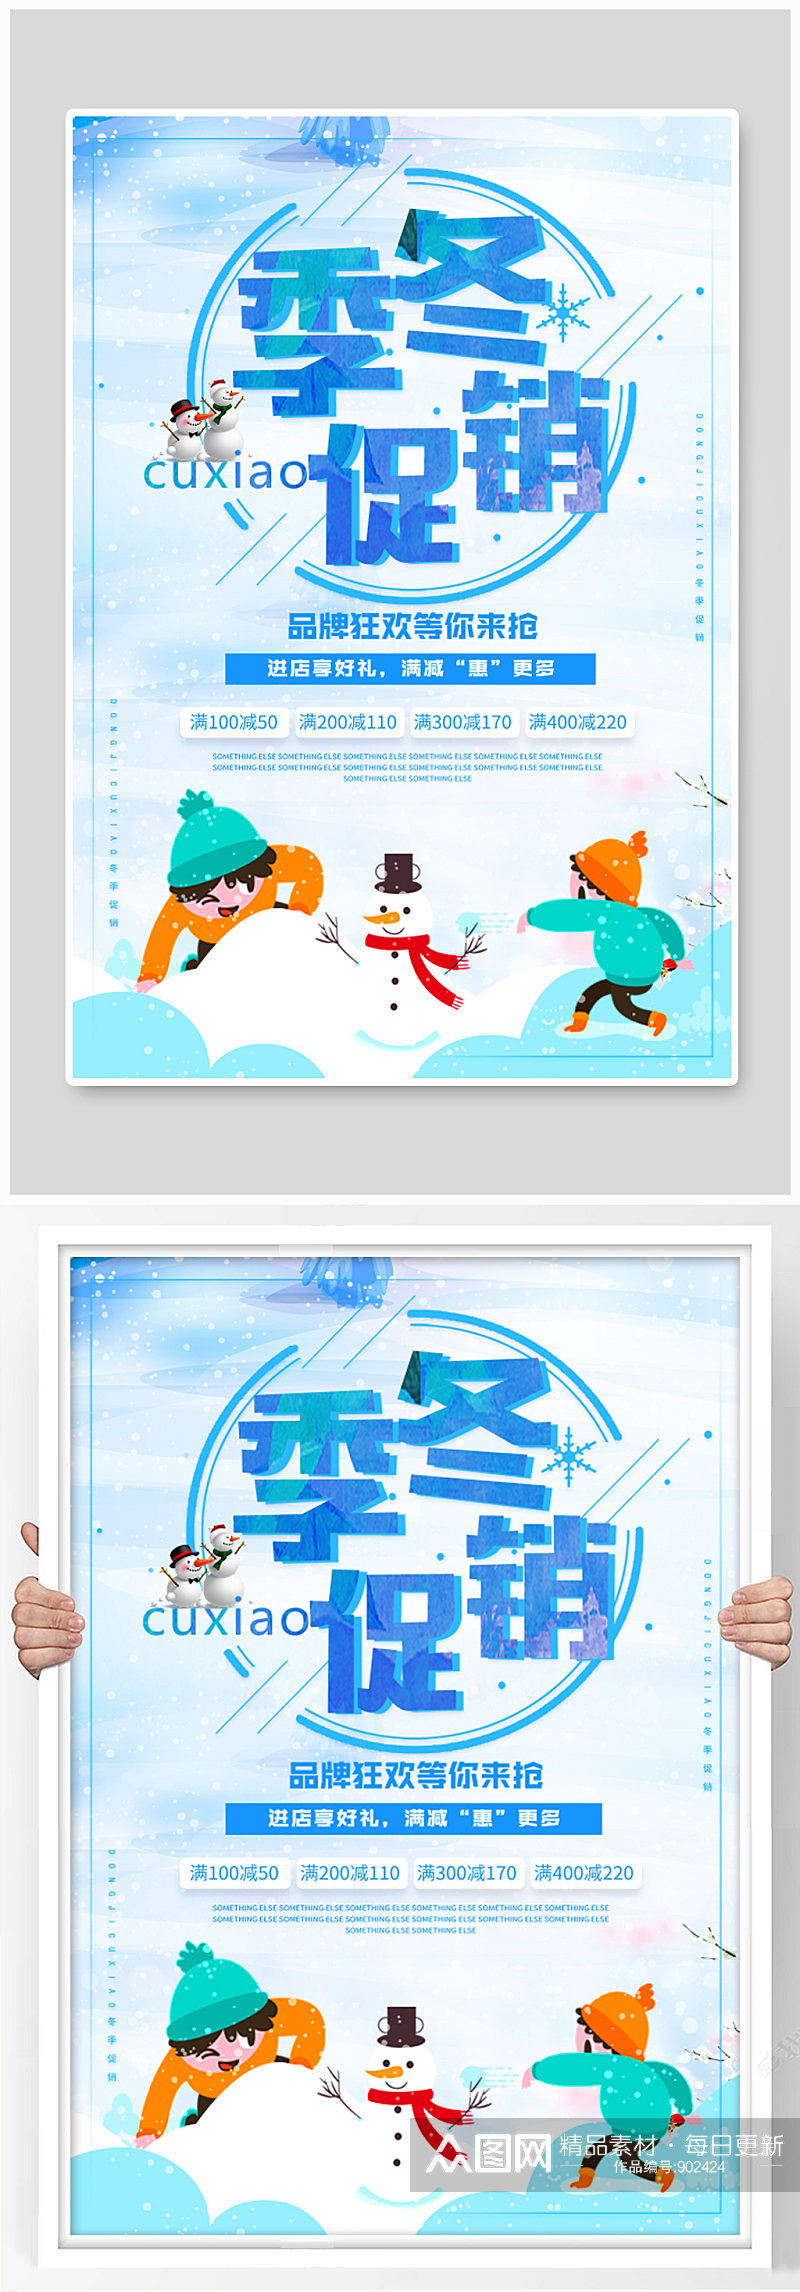 冬季促销活动海报设计素材